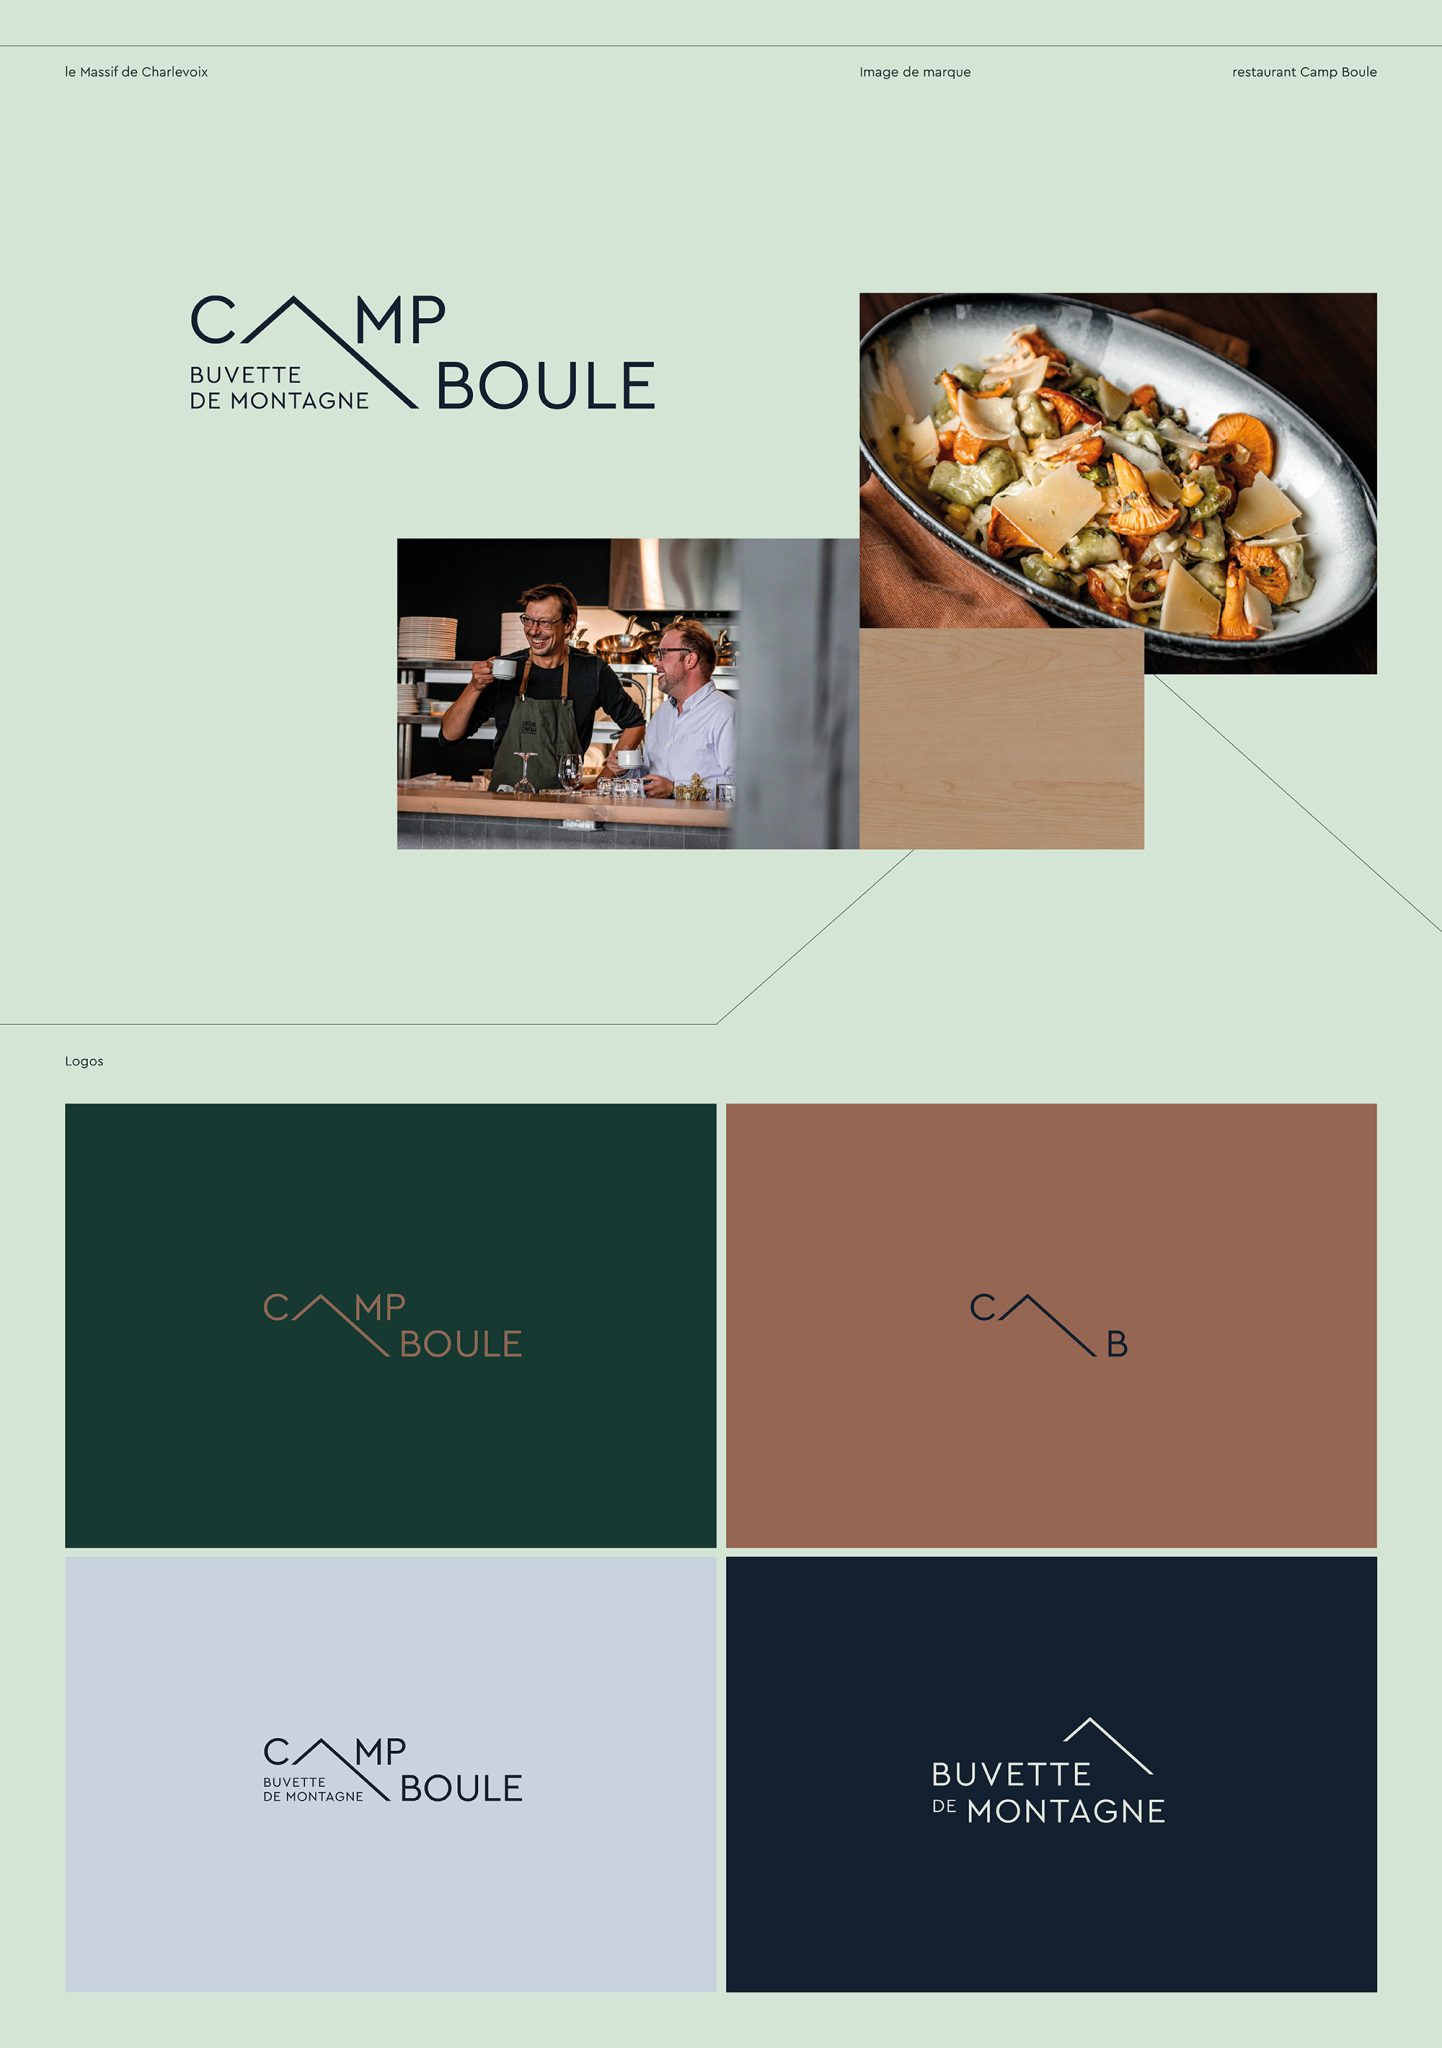 Nouveau restaurant Camp Boule. Image de marque et logos, introduction